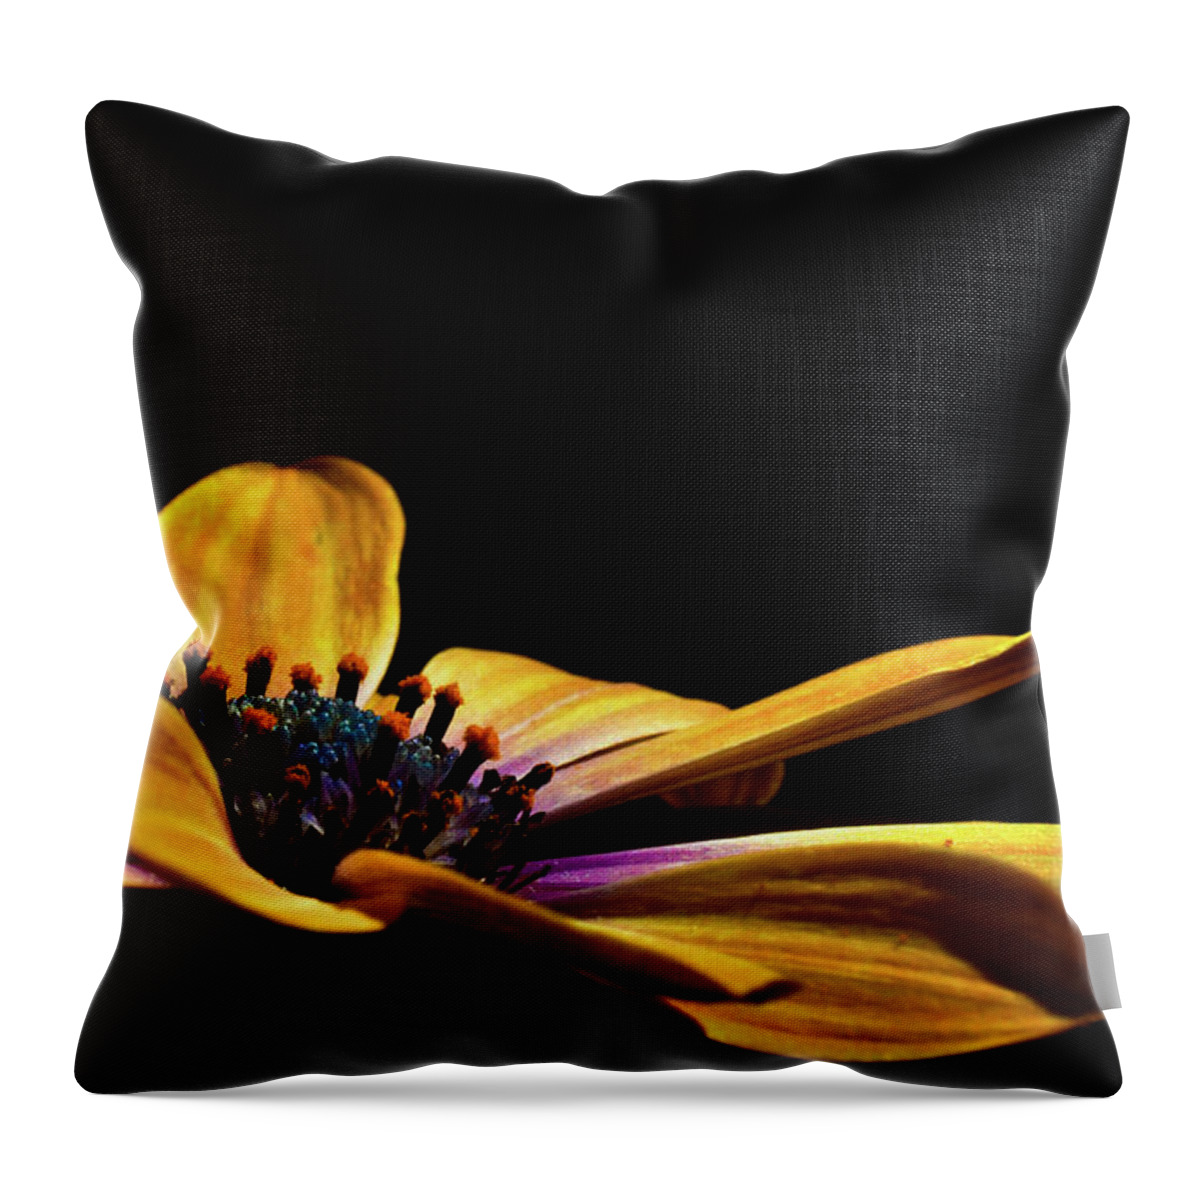 Flower Throw Pillow featuring the photograph Sunset Flutter by Pamela Dunn-Parrish